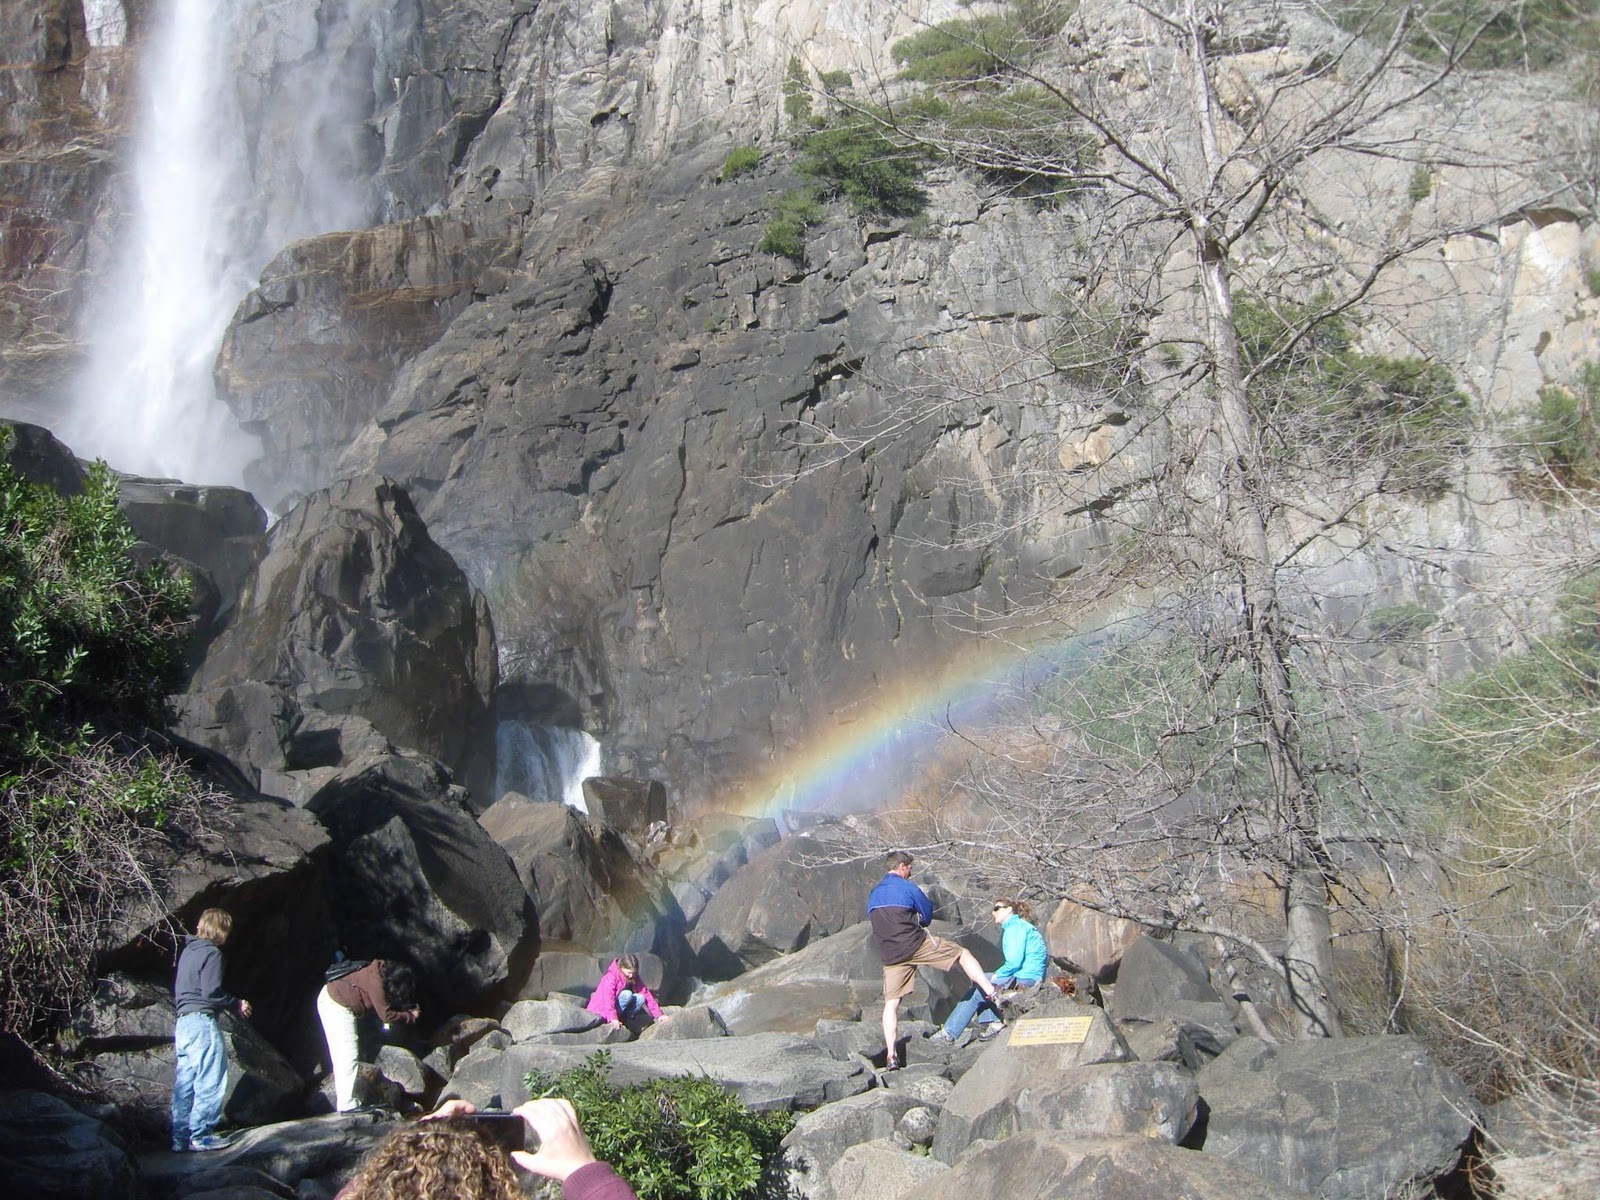 Bridal Veil Falls, visible